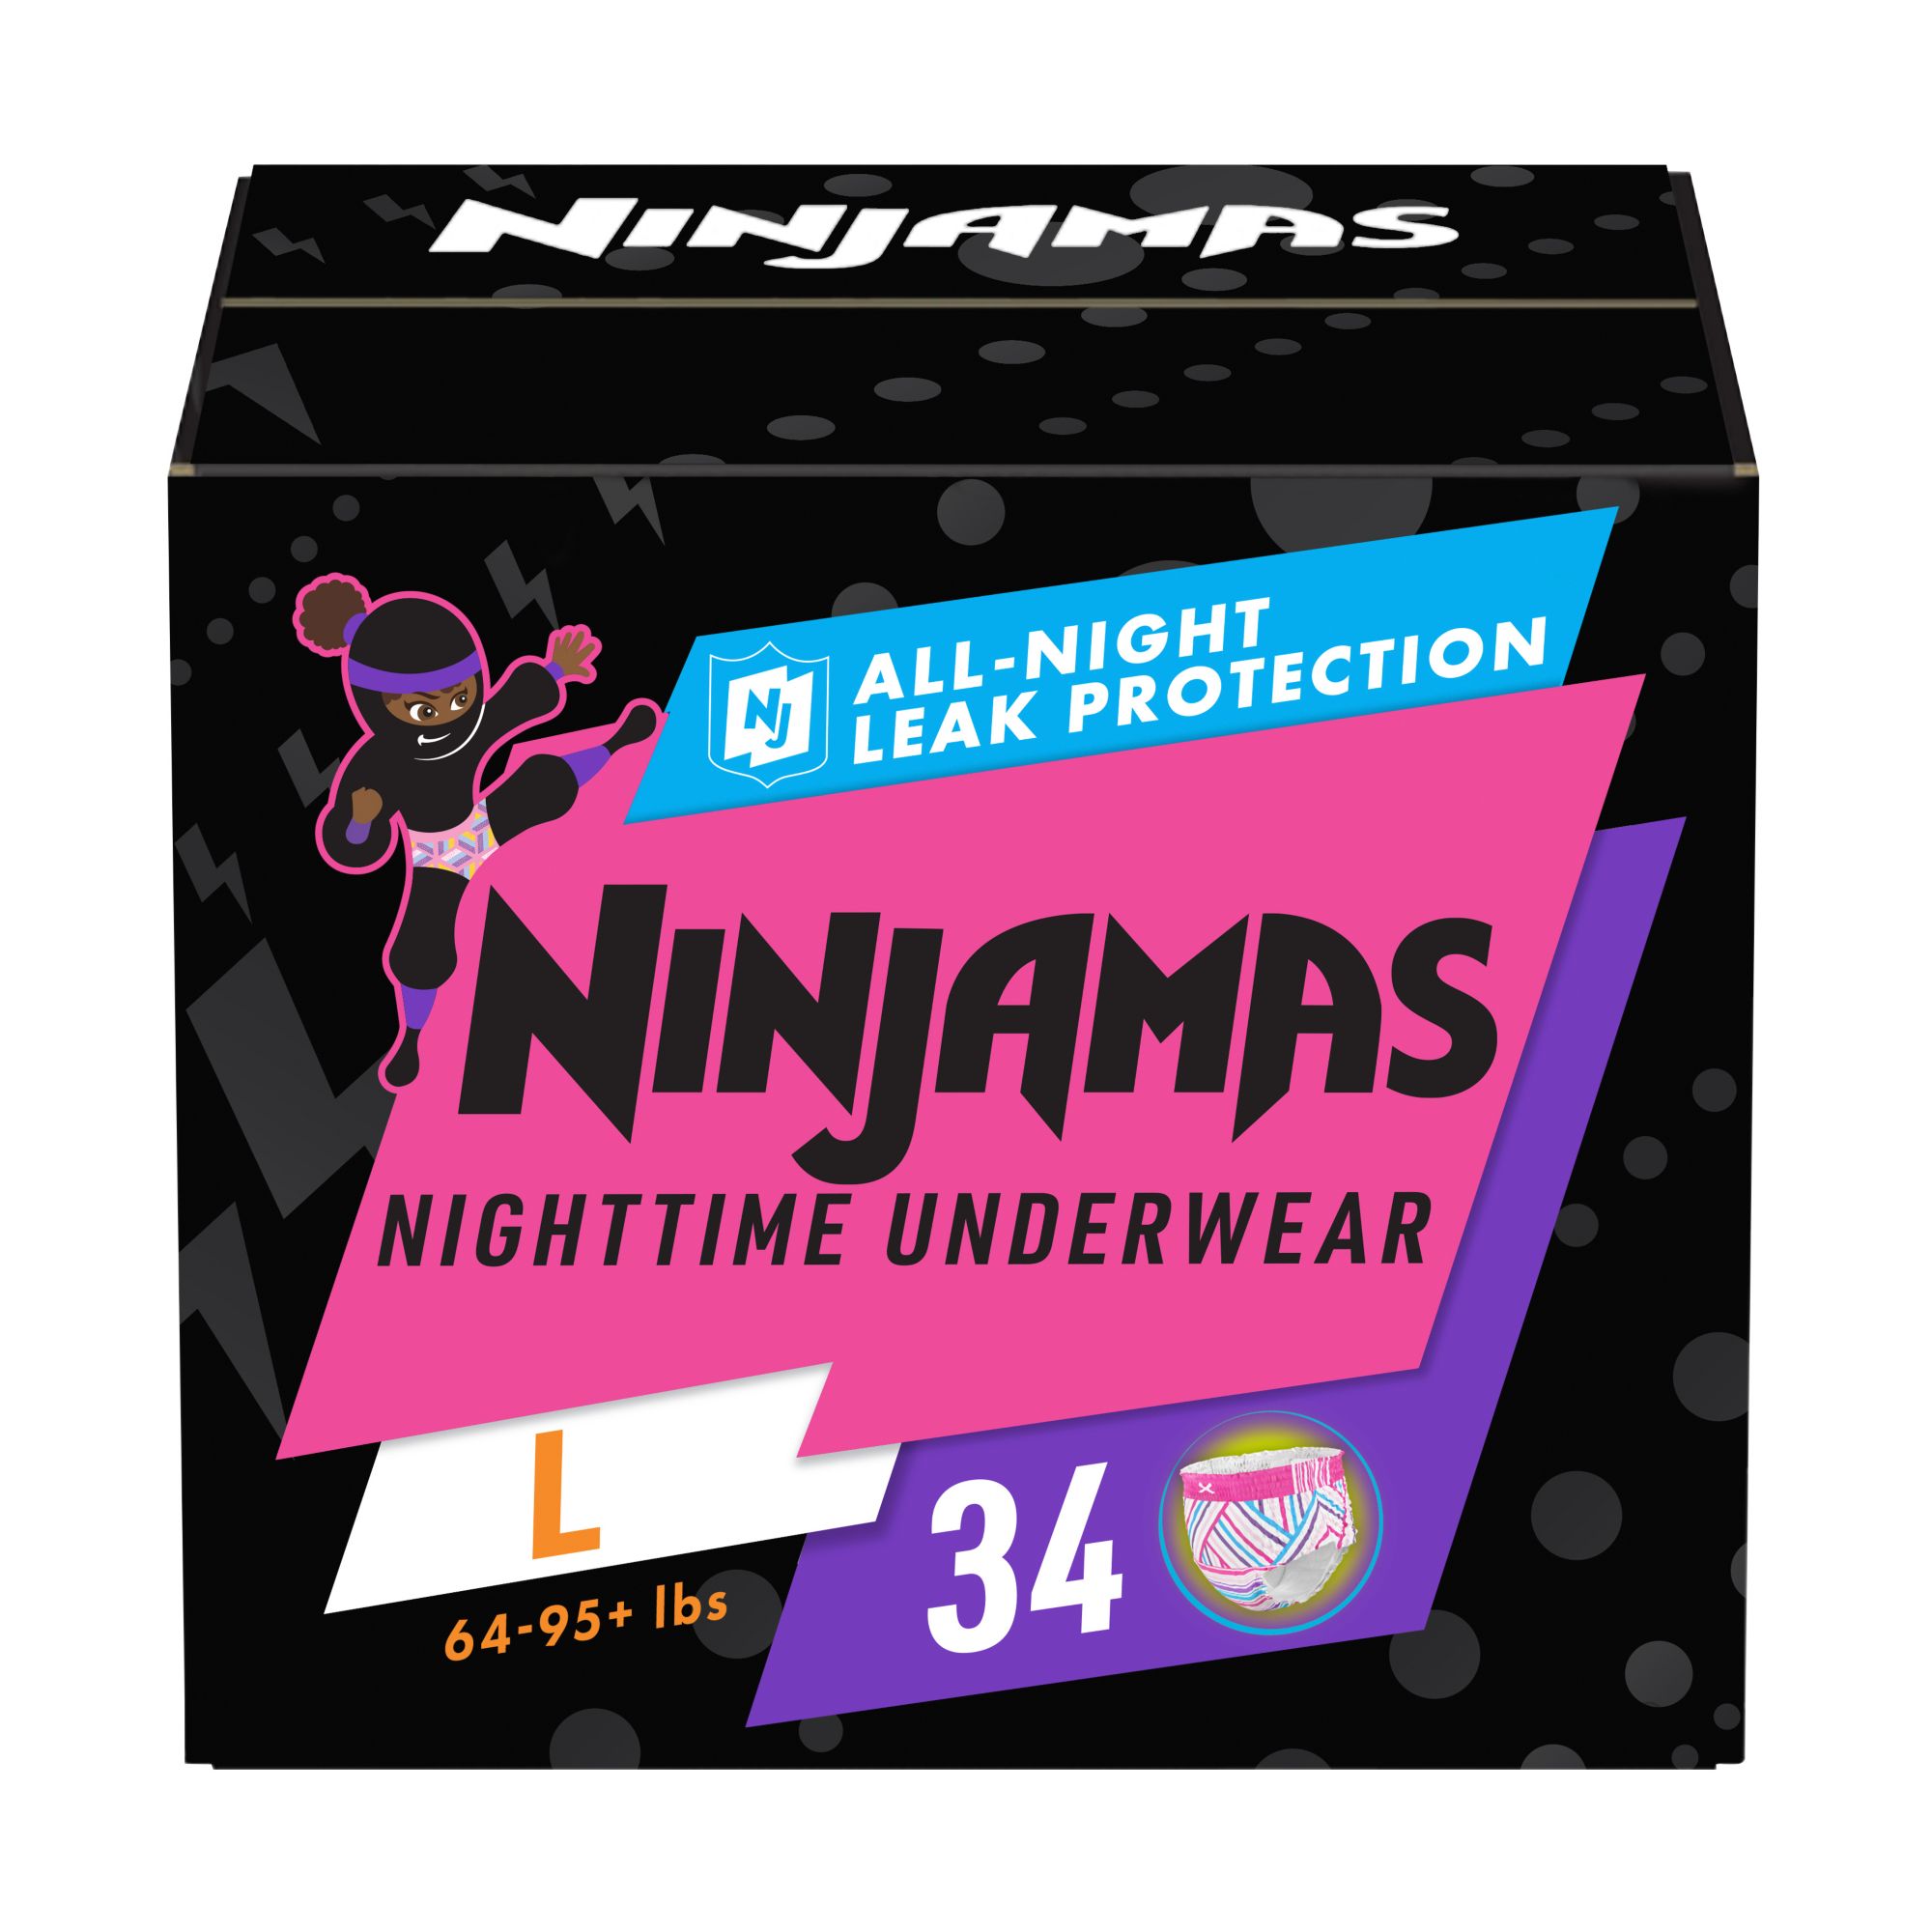 Nighttime Underwear 